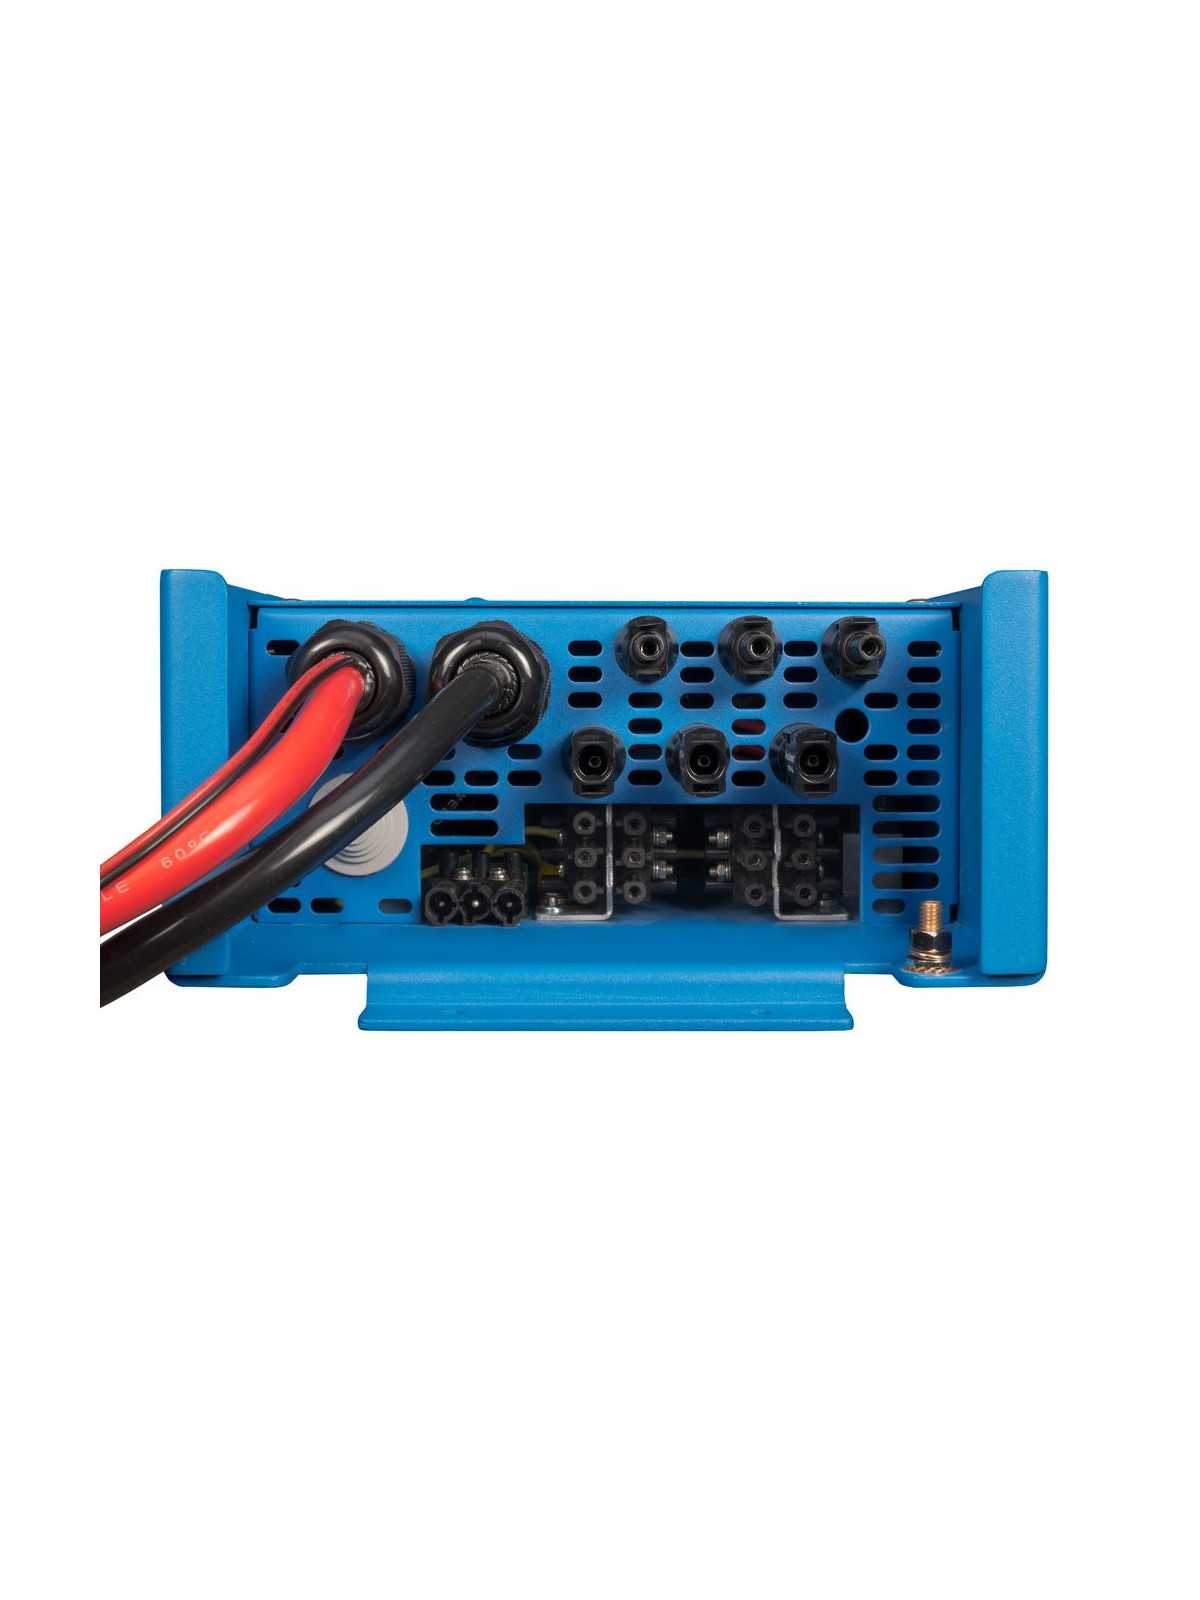 Victron EasySolar 12V / 24V inverter and charge controller